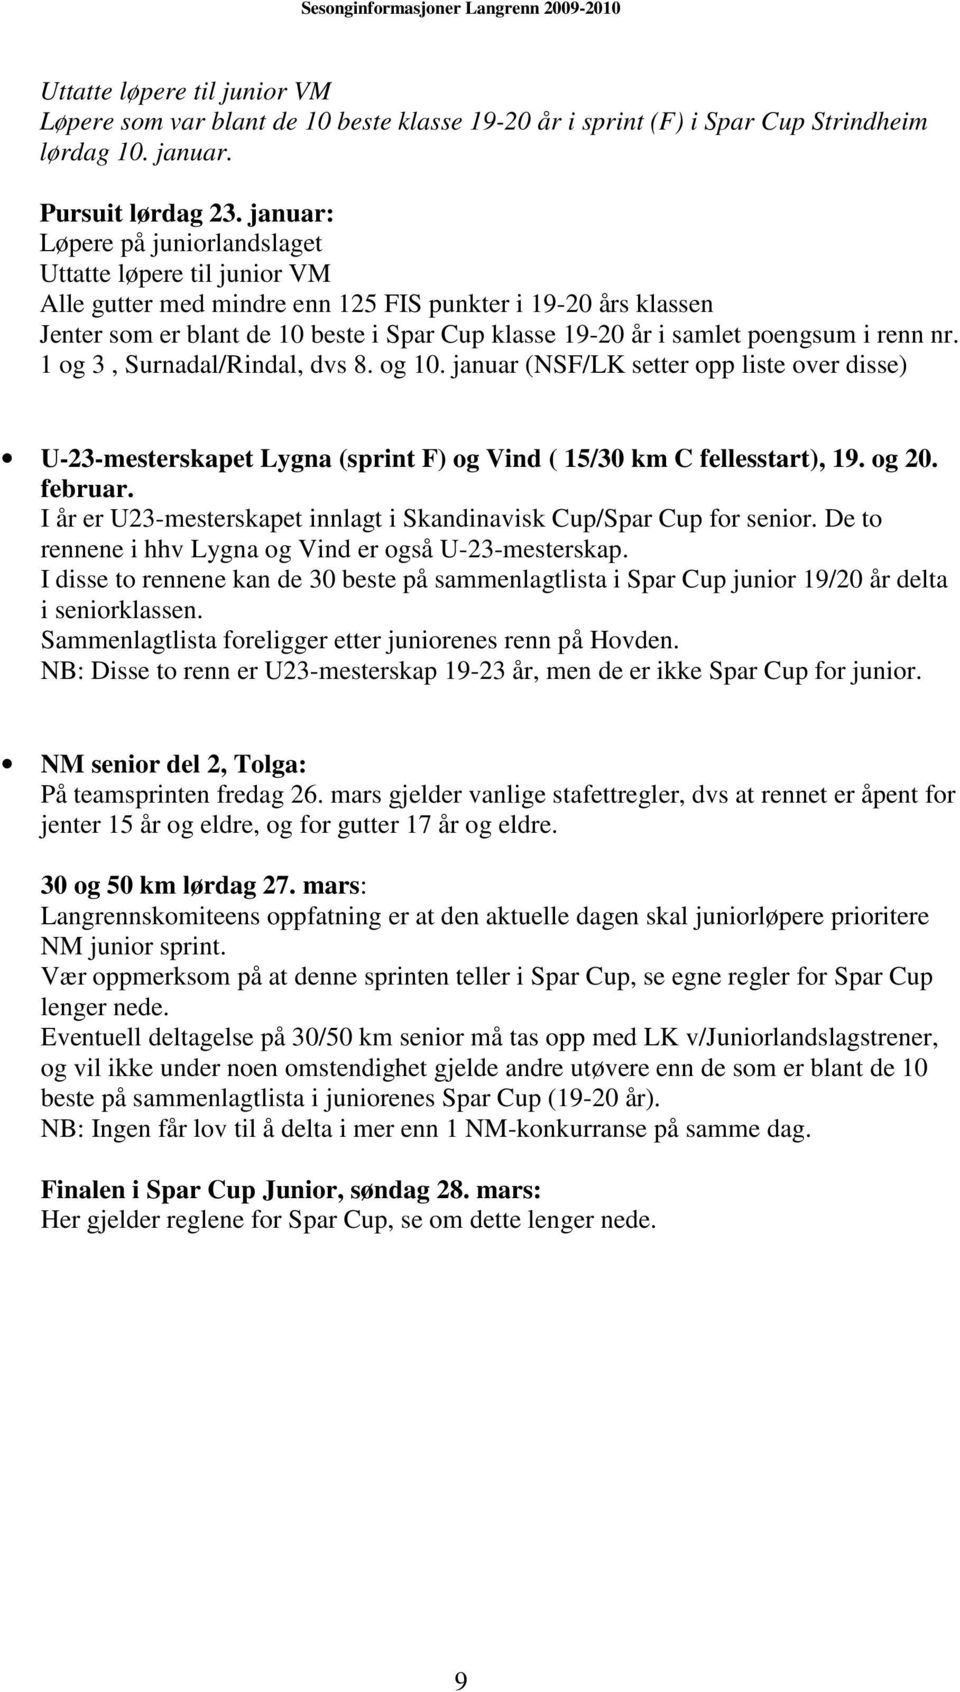 poengsum i renn nr. 1 og 3, Surnadal/Rindal, dvs 8. og 10. januar (NSF/LK setter opp liste over disse) U-23-mesterskapet Lygna (sprint F) og Vind ( 15/30 km C fellesstart), 19. og 20. februar.